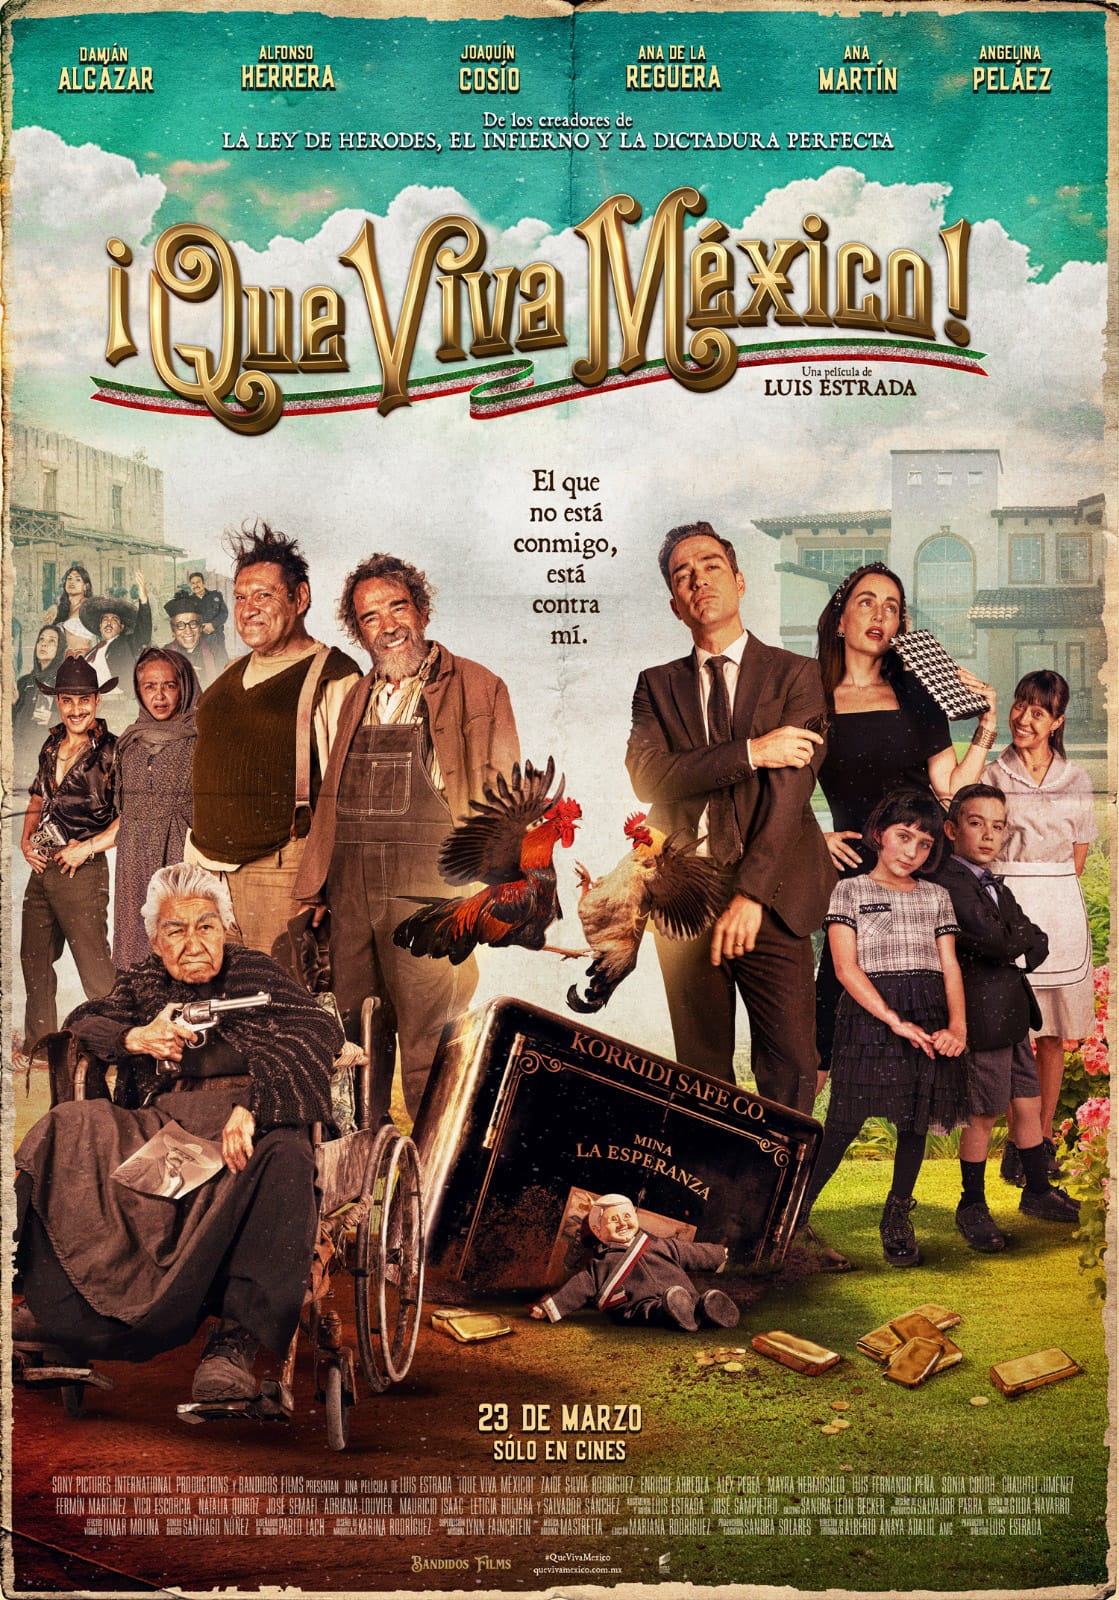 El filme del mexicano Luis Estrada, grabado en Real de Catorce, se proyectará del 23 al 30 de marzo con funciones a las 20:00 horas.